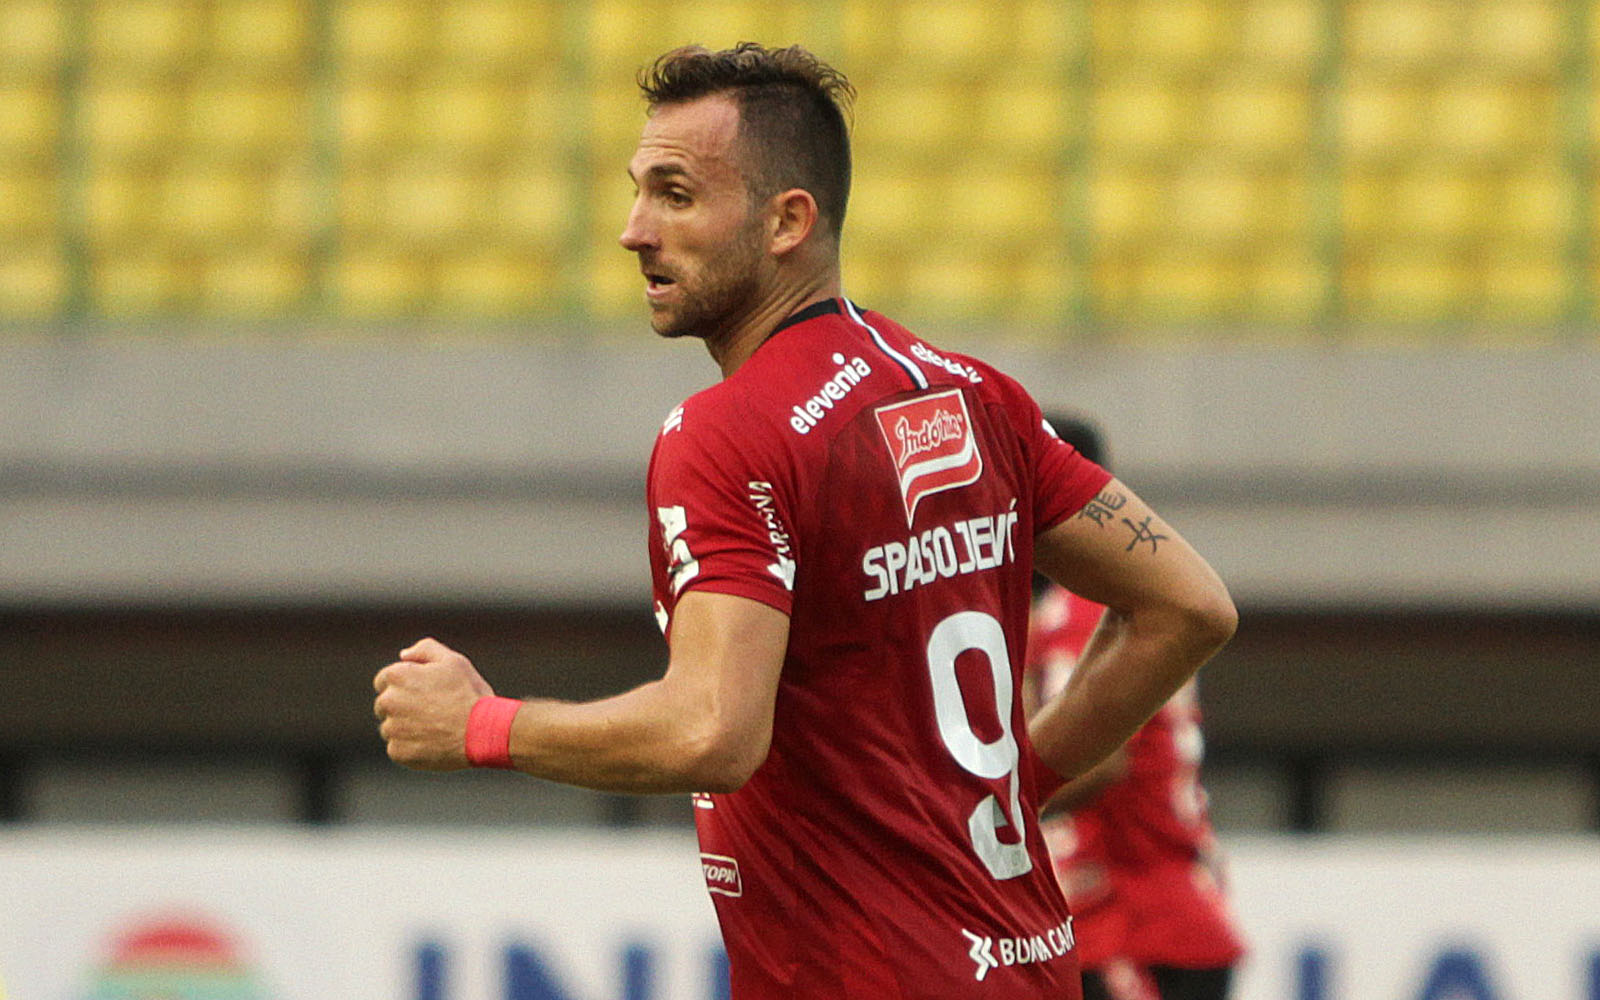 Ucapkan Terima Kasih, Ilija Spasojevic Beri Isyarat Tinggalkan Bali United